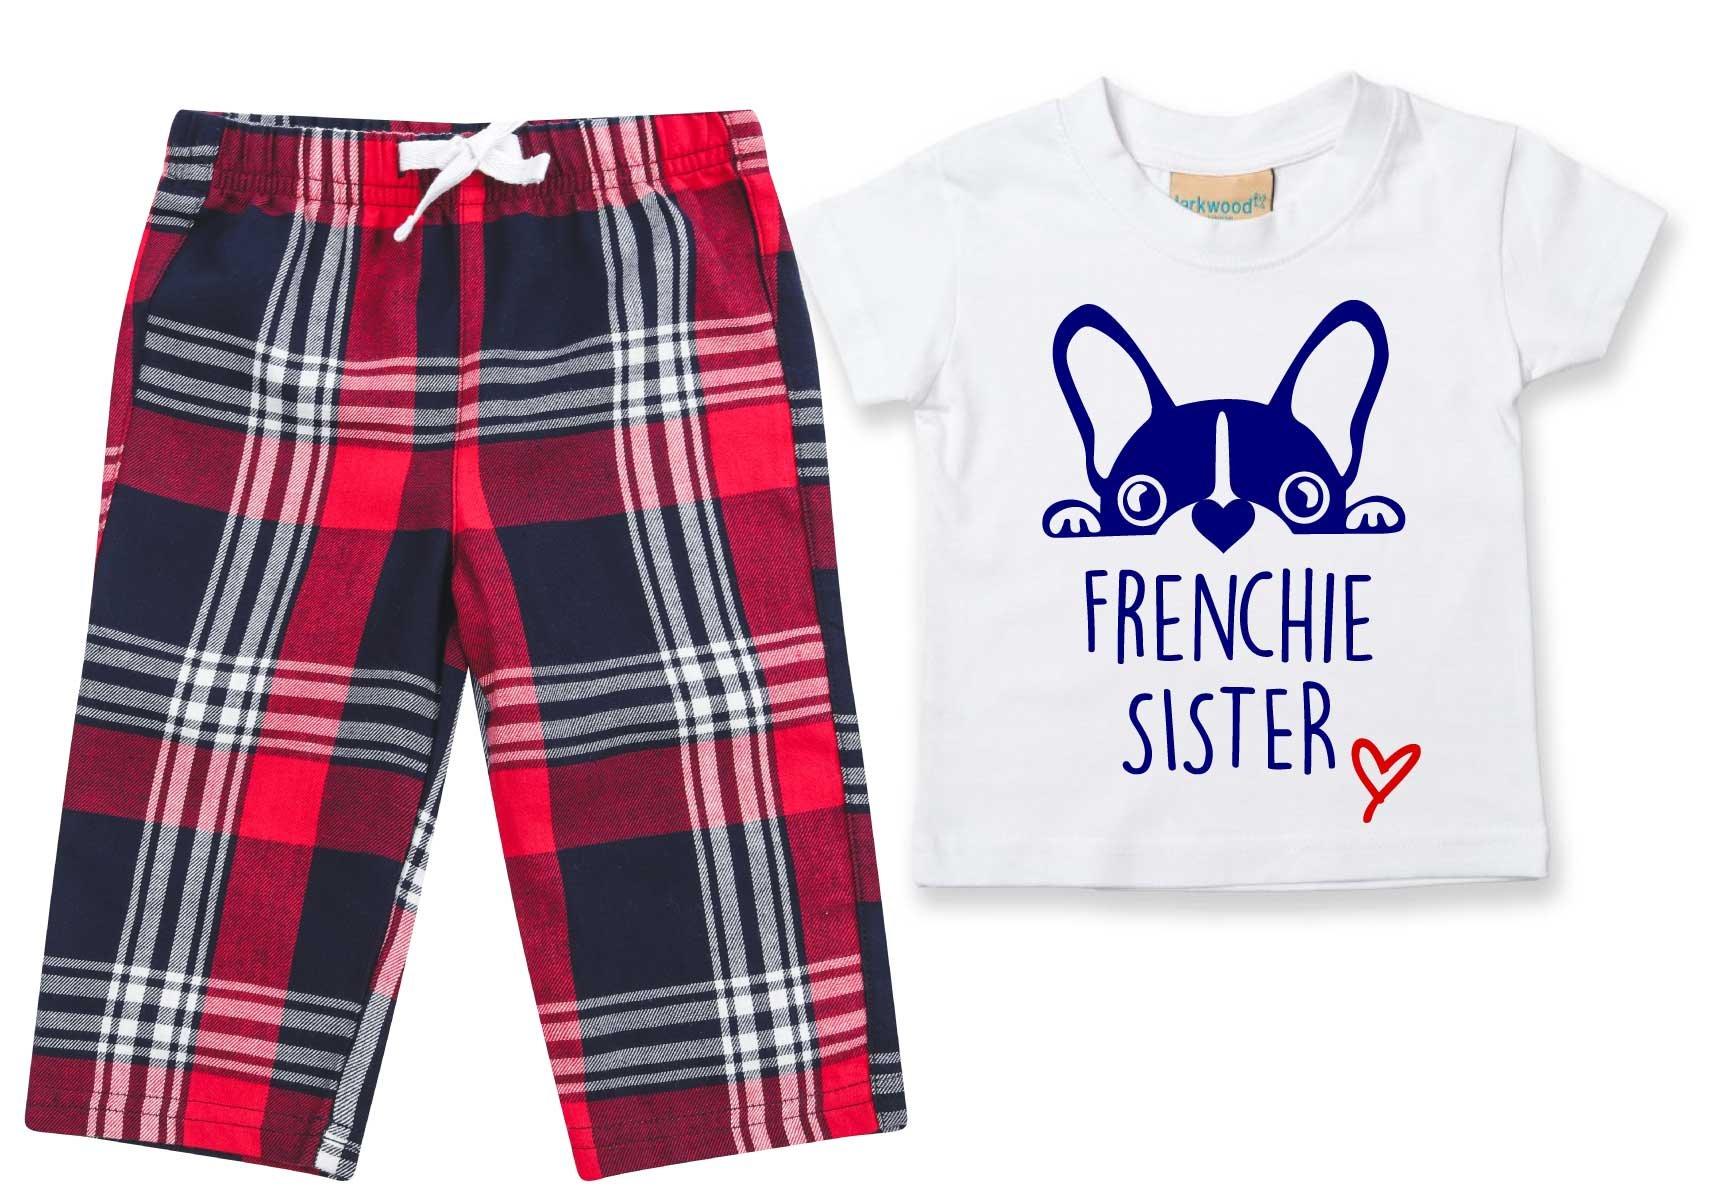 Пижамы Frenchie Sister, детские брюки в клетку, пижамный комплект с французским бульдогом 60 SECOND MAKEOVER, красный георгина тартан